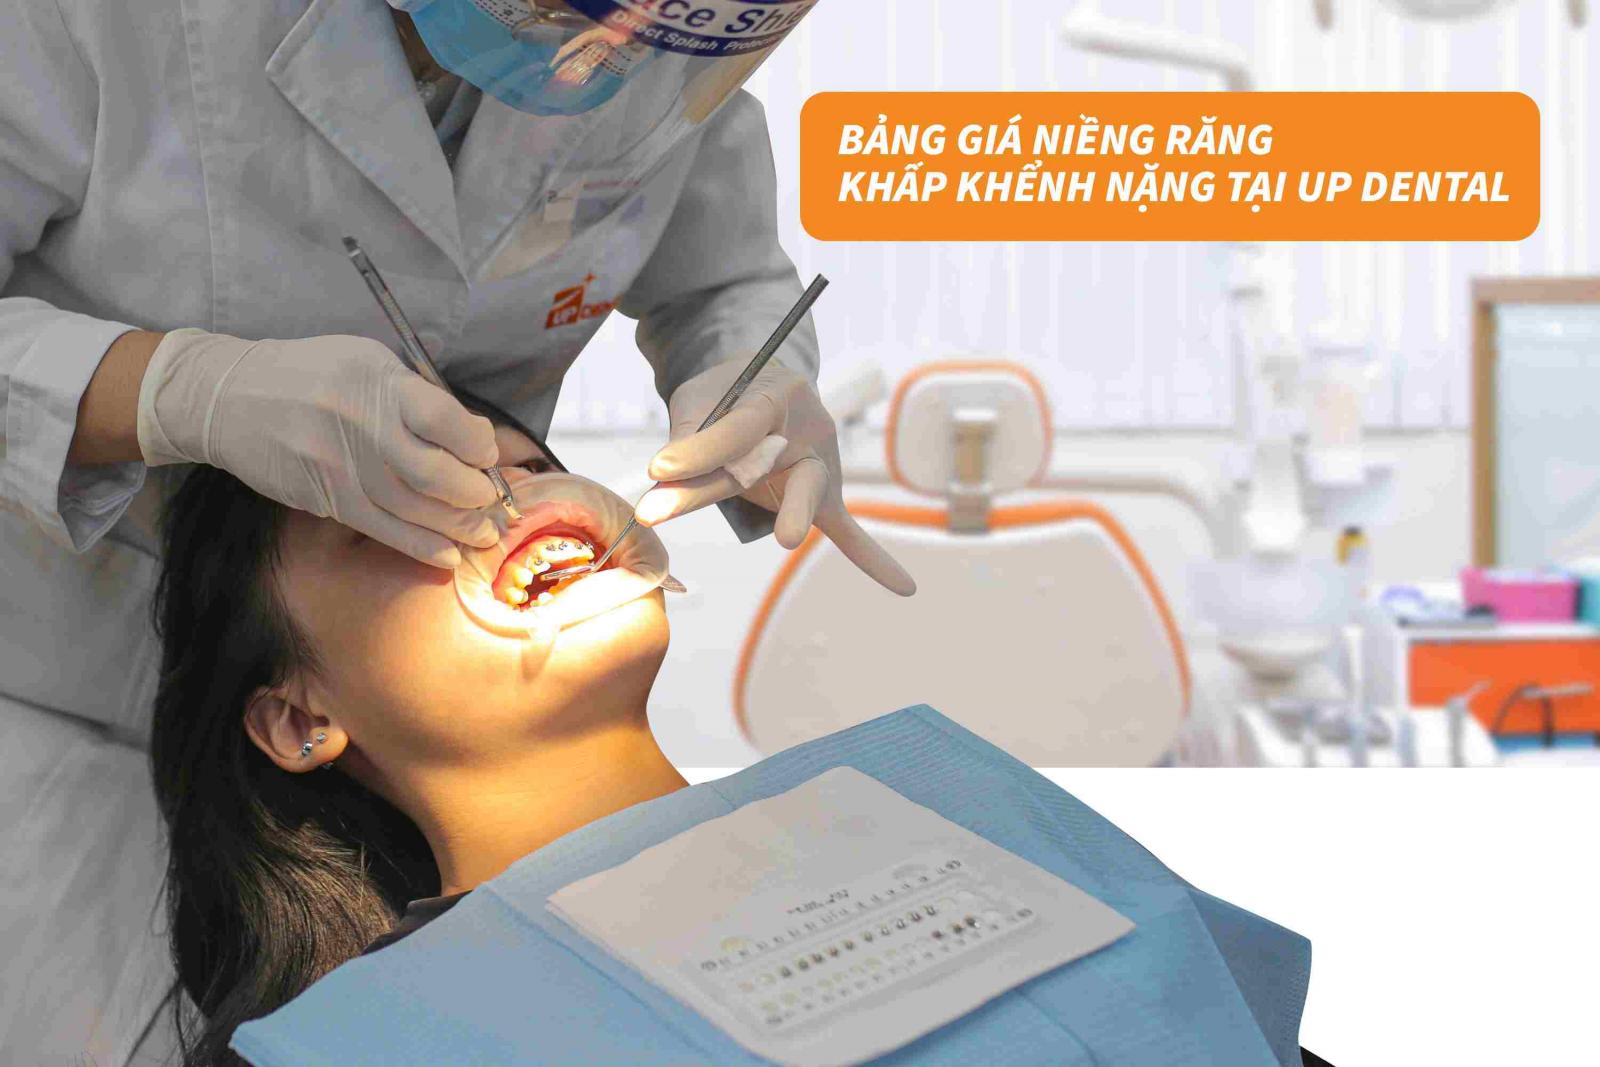 Bảng giá niềng răng khấp khểnh nặng tại Up Dental 